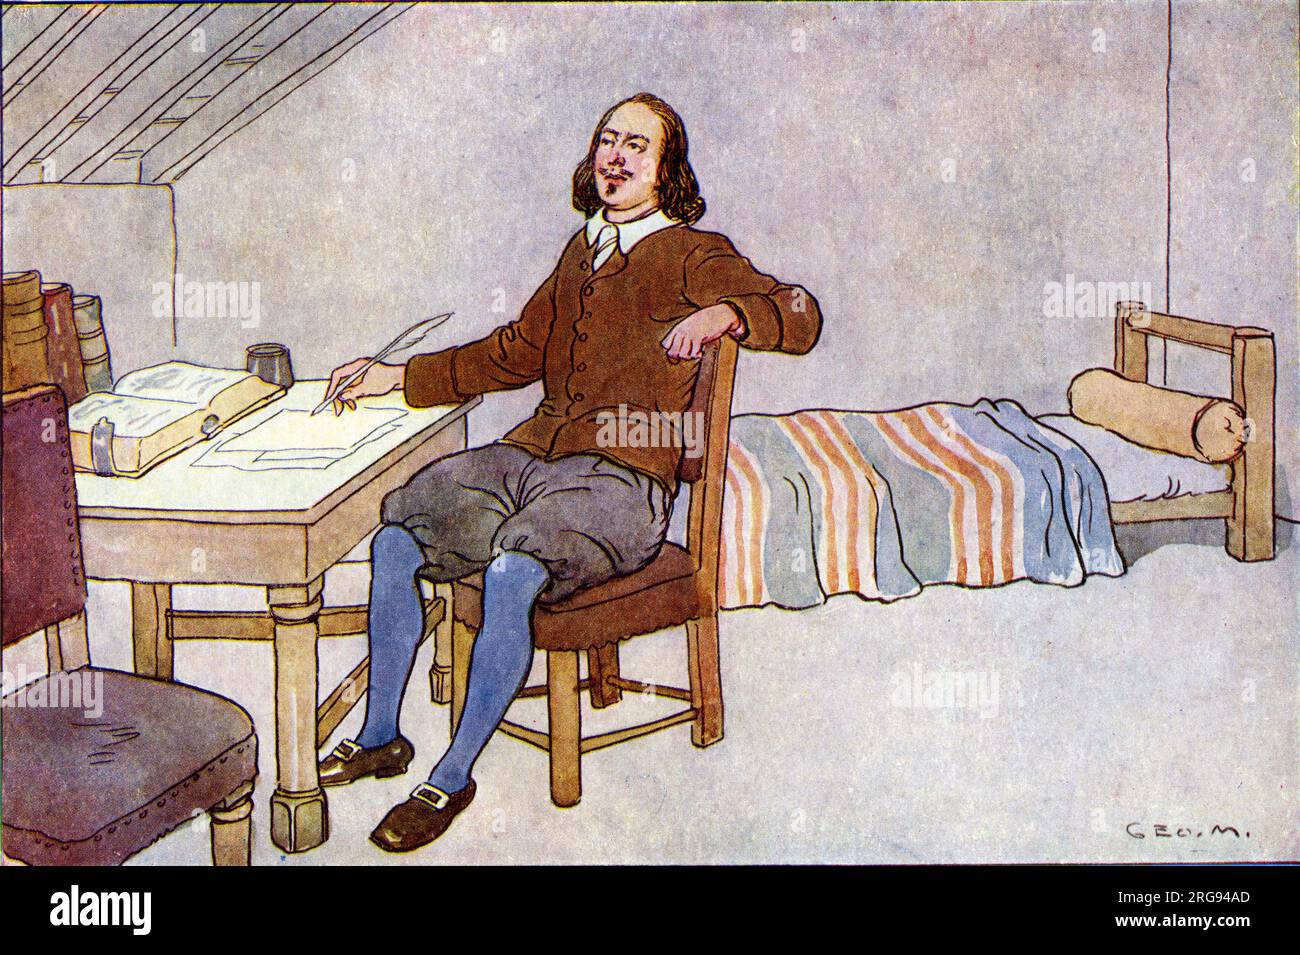 John Bunyan (1628-1688) - scrittore inglese e predicatore puritano - scrivendo "The Pilgrim's Progress" durante i suoi dodici anni di reclusione (tra il 1661 e il 1672), anche se non pubblicato fino al 1678 sei anni dopo il suo rilascio. Foto Stock